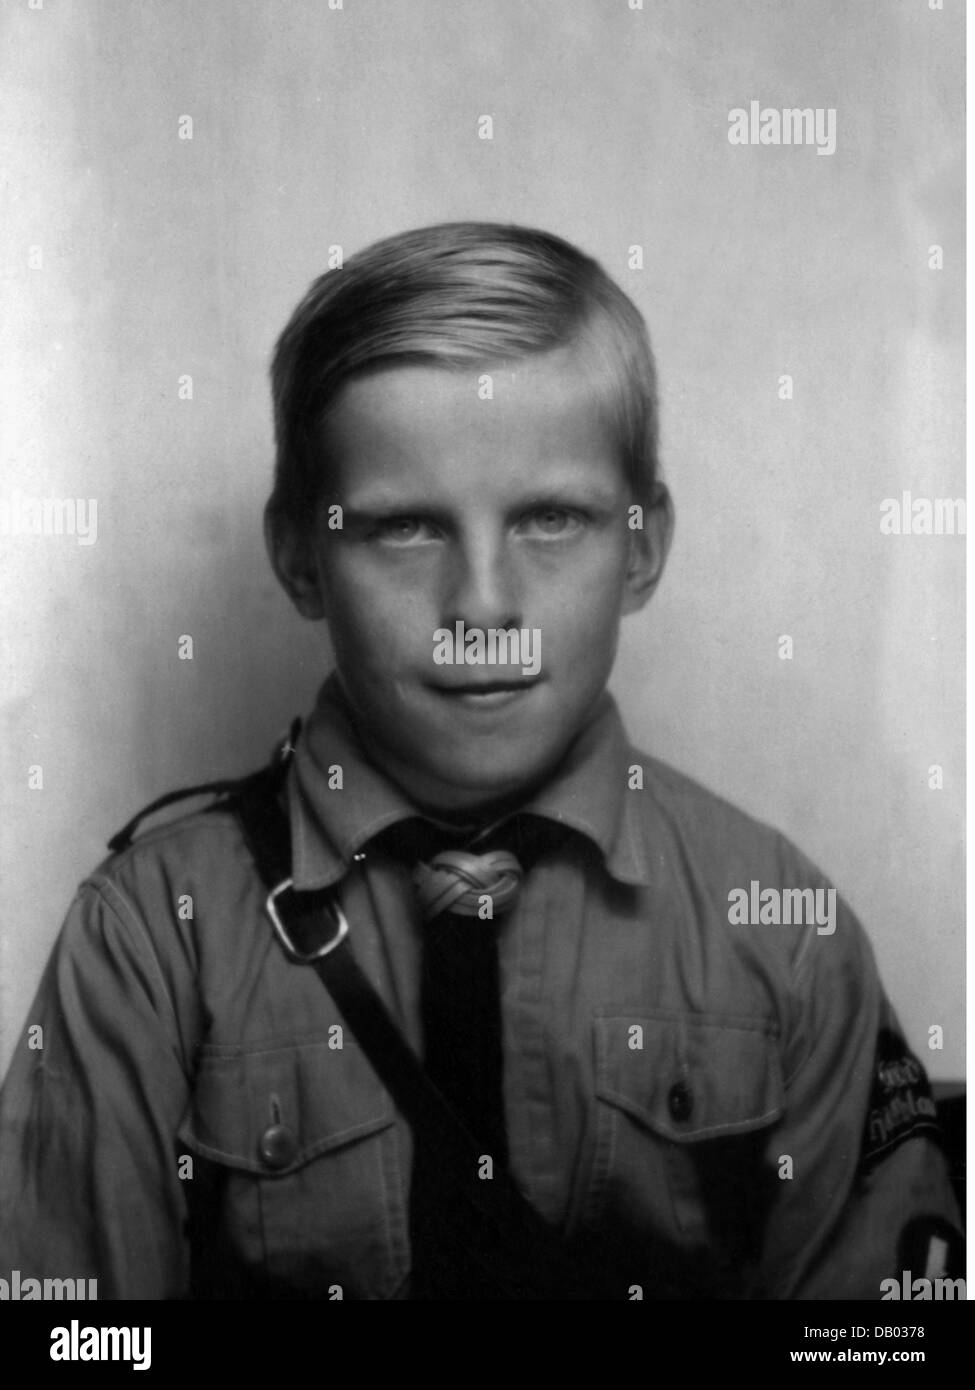 Nacionalsocialismo, organizaciones, Hitler Youth (Hitlerjugend, HJ), German Youth (Deutsches Jungvolk, DJ), boy, retrato, 1943, Derechos adicionales-Clearences-no disponible Foto de stock